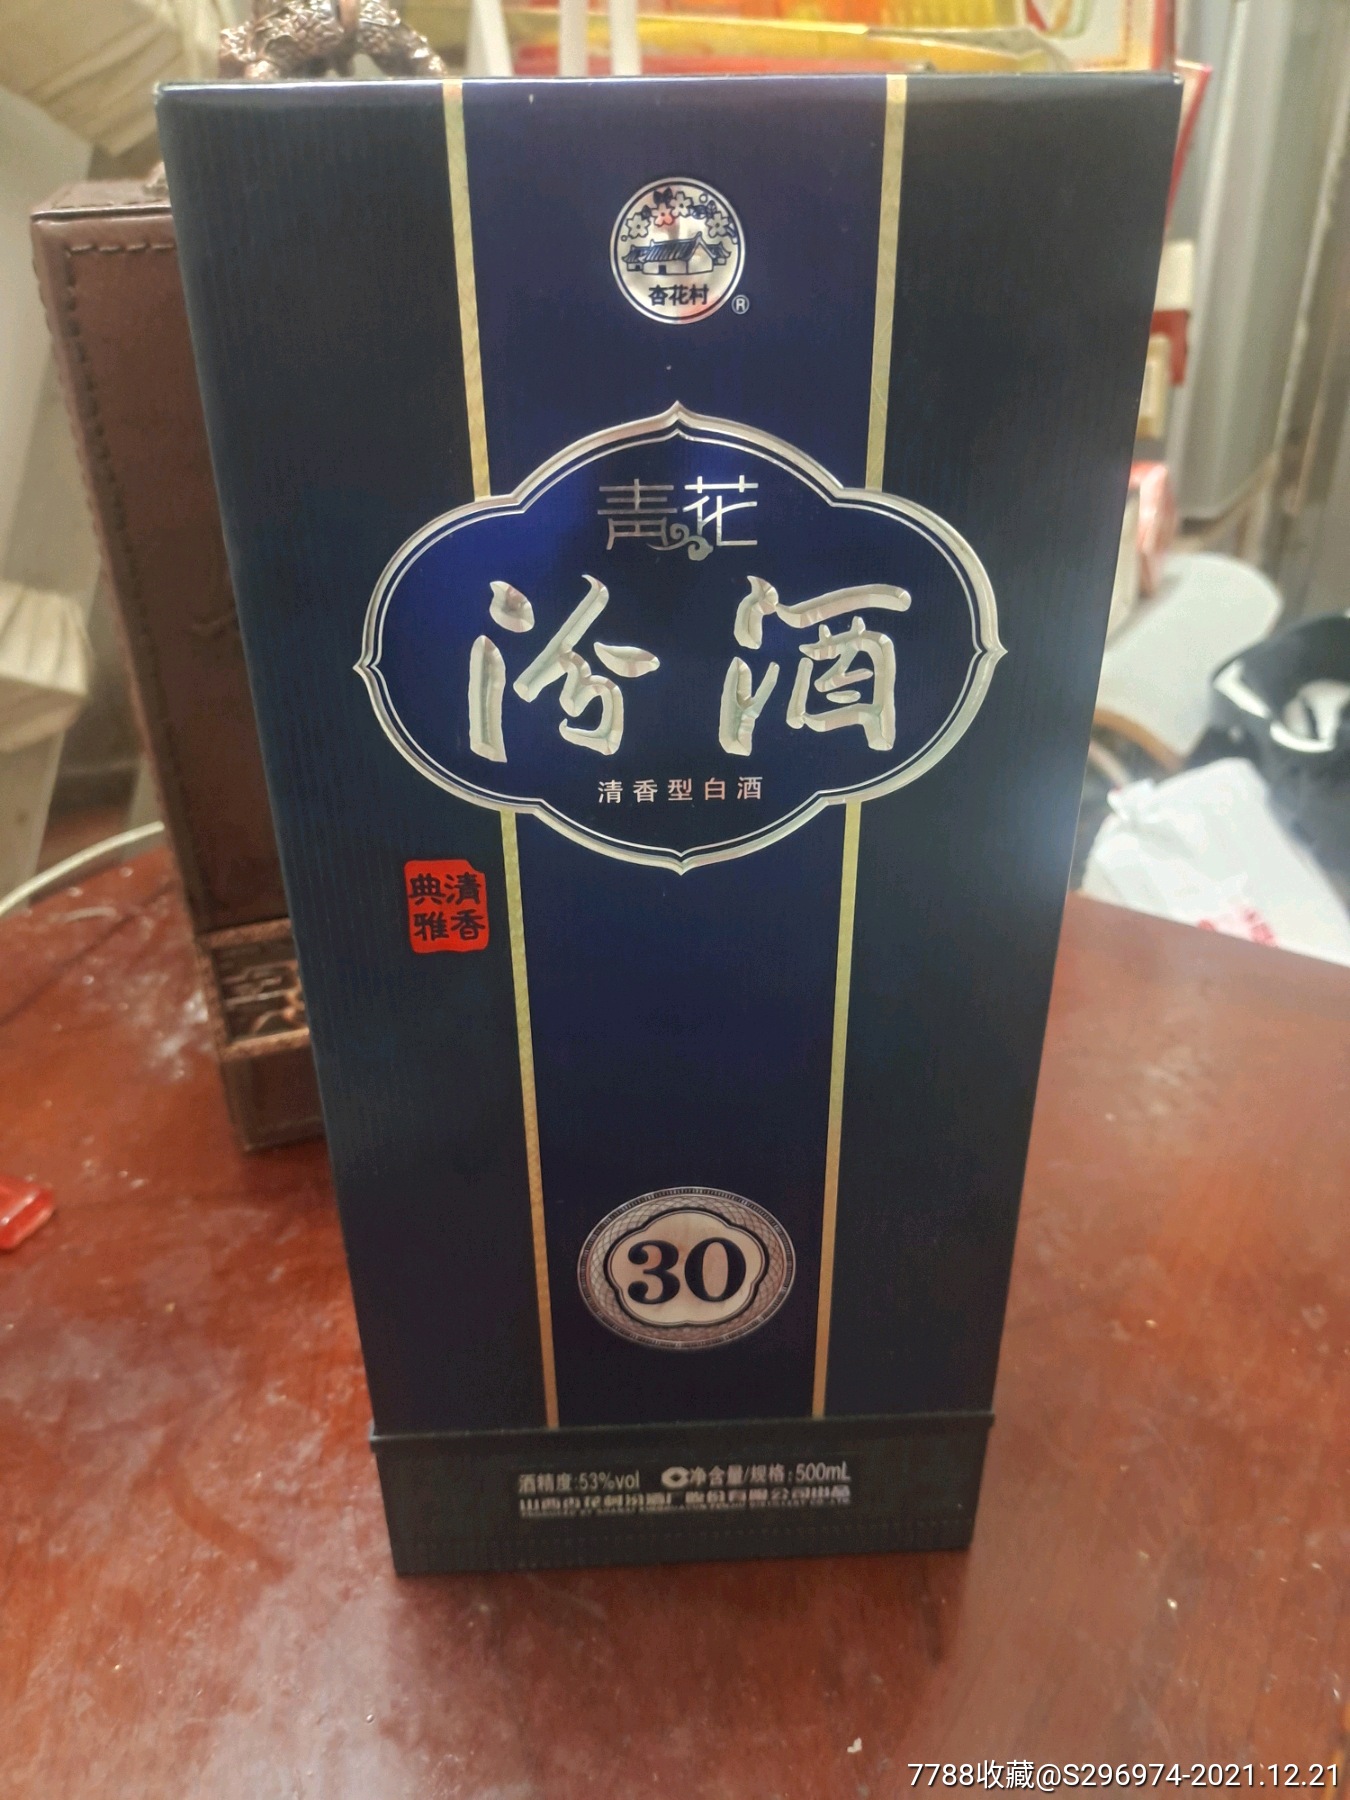 我这里的中国青花汾酒图片